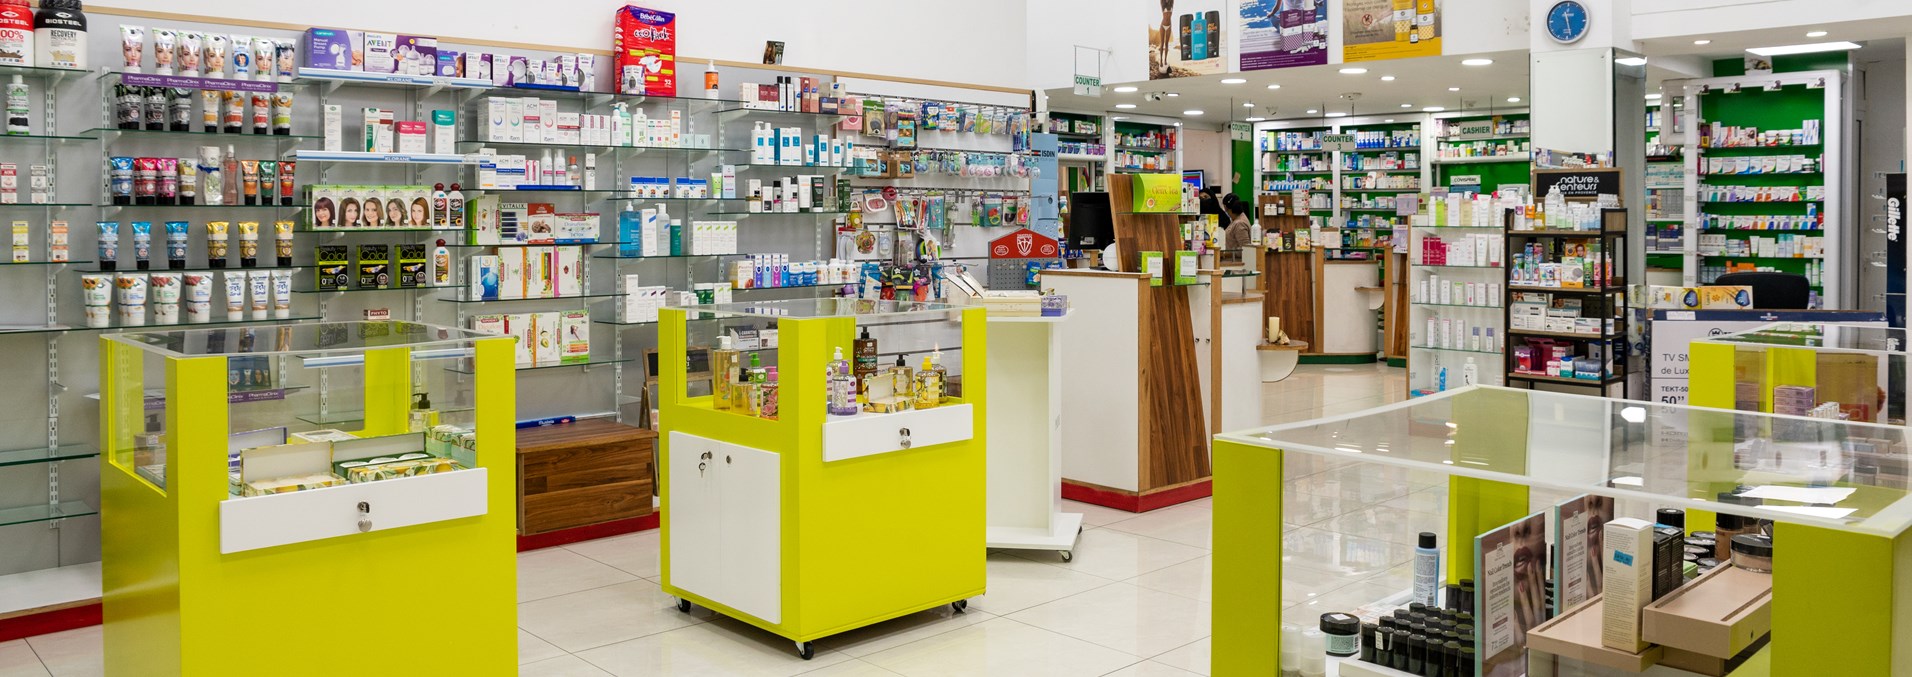 Billadams Pharmacy